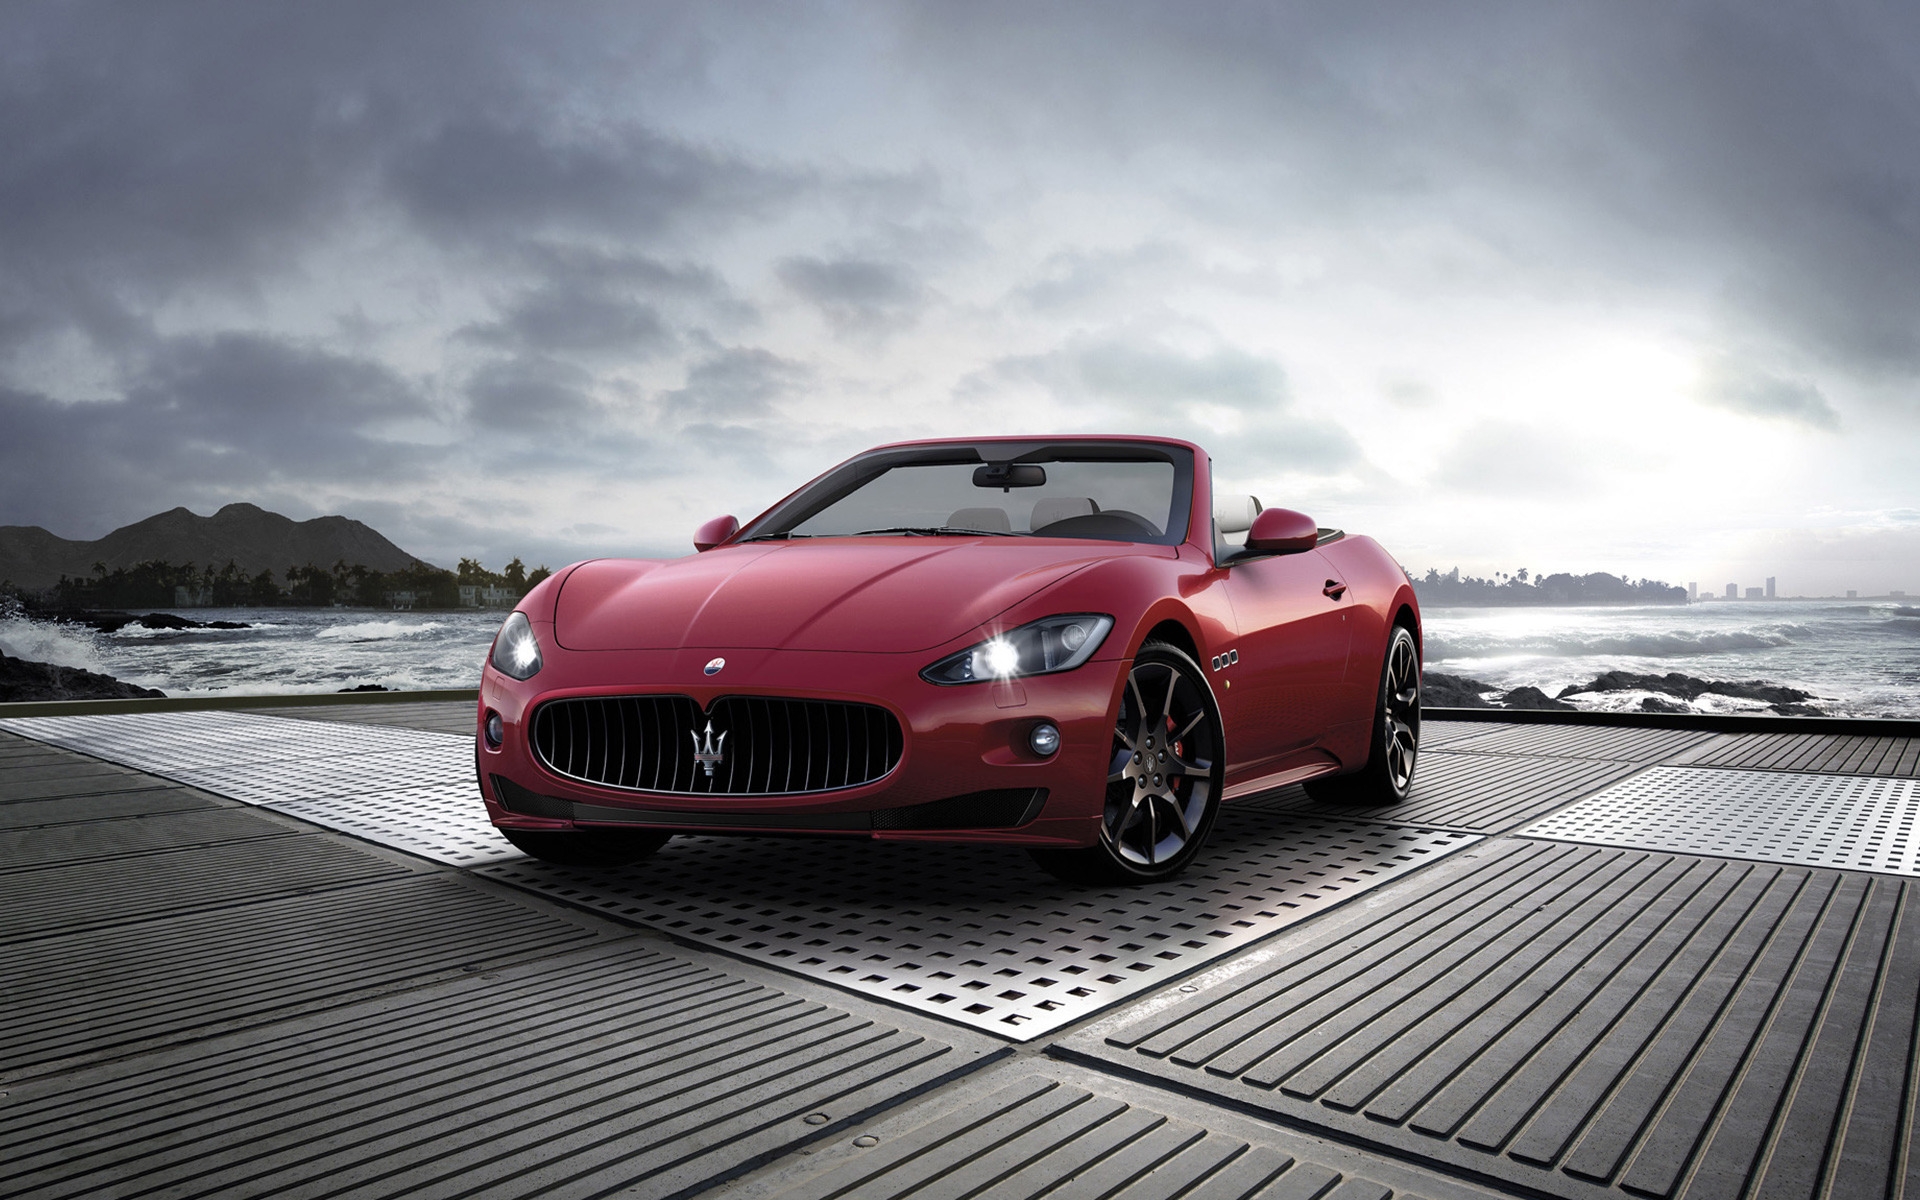 2011 Maserati GranCabrio Sport for 1920 x 1200 widescreen resolution